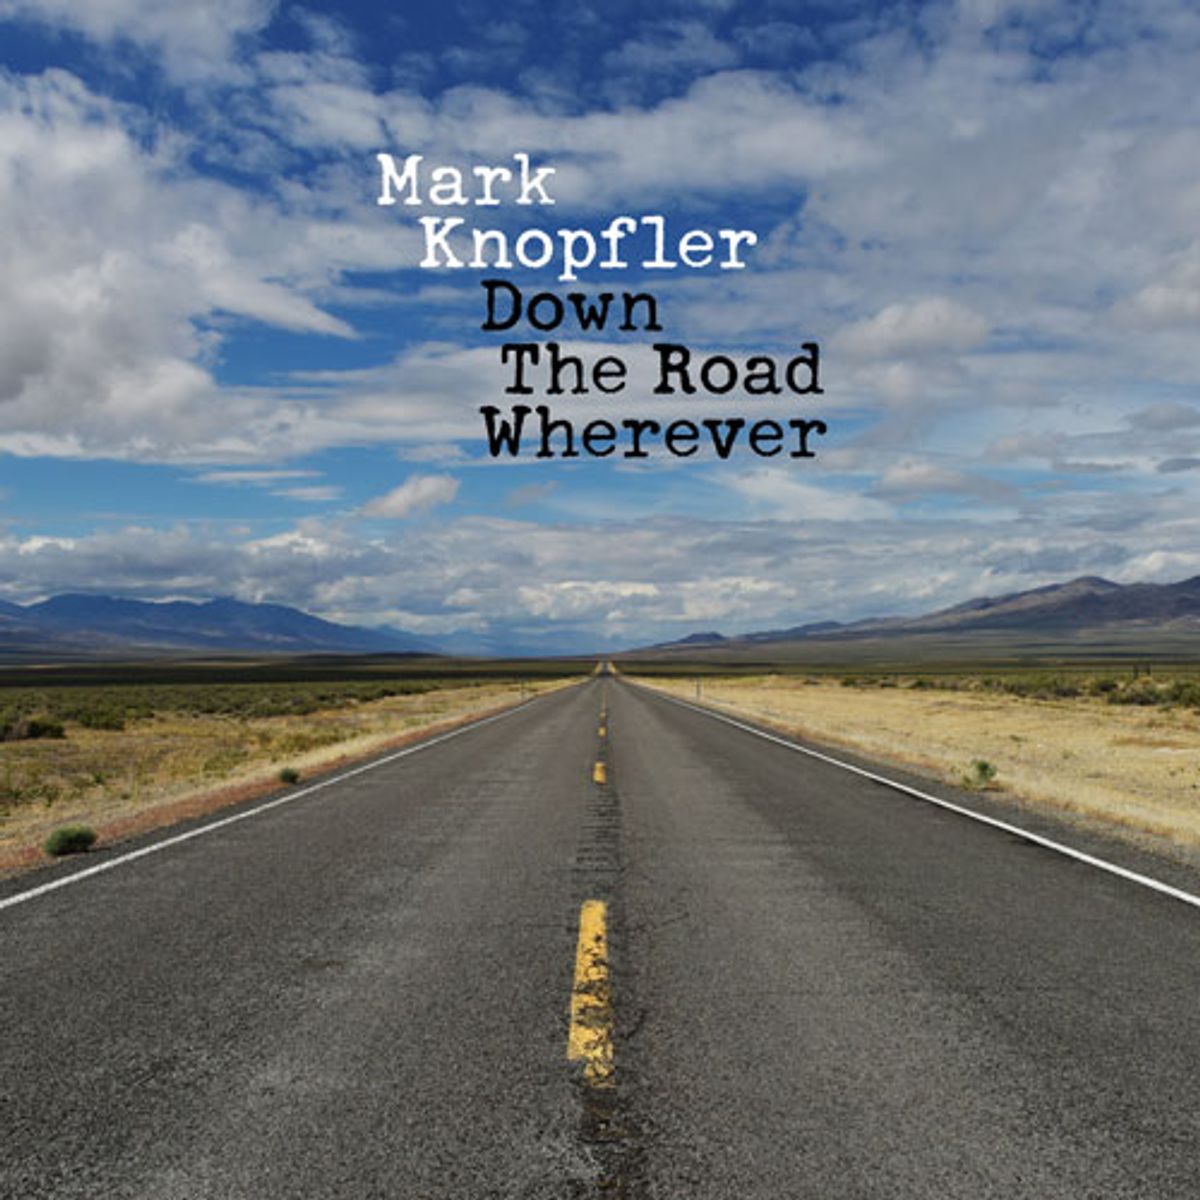 Listen to Mark Knopfler's "Back On The Dance Floor"